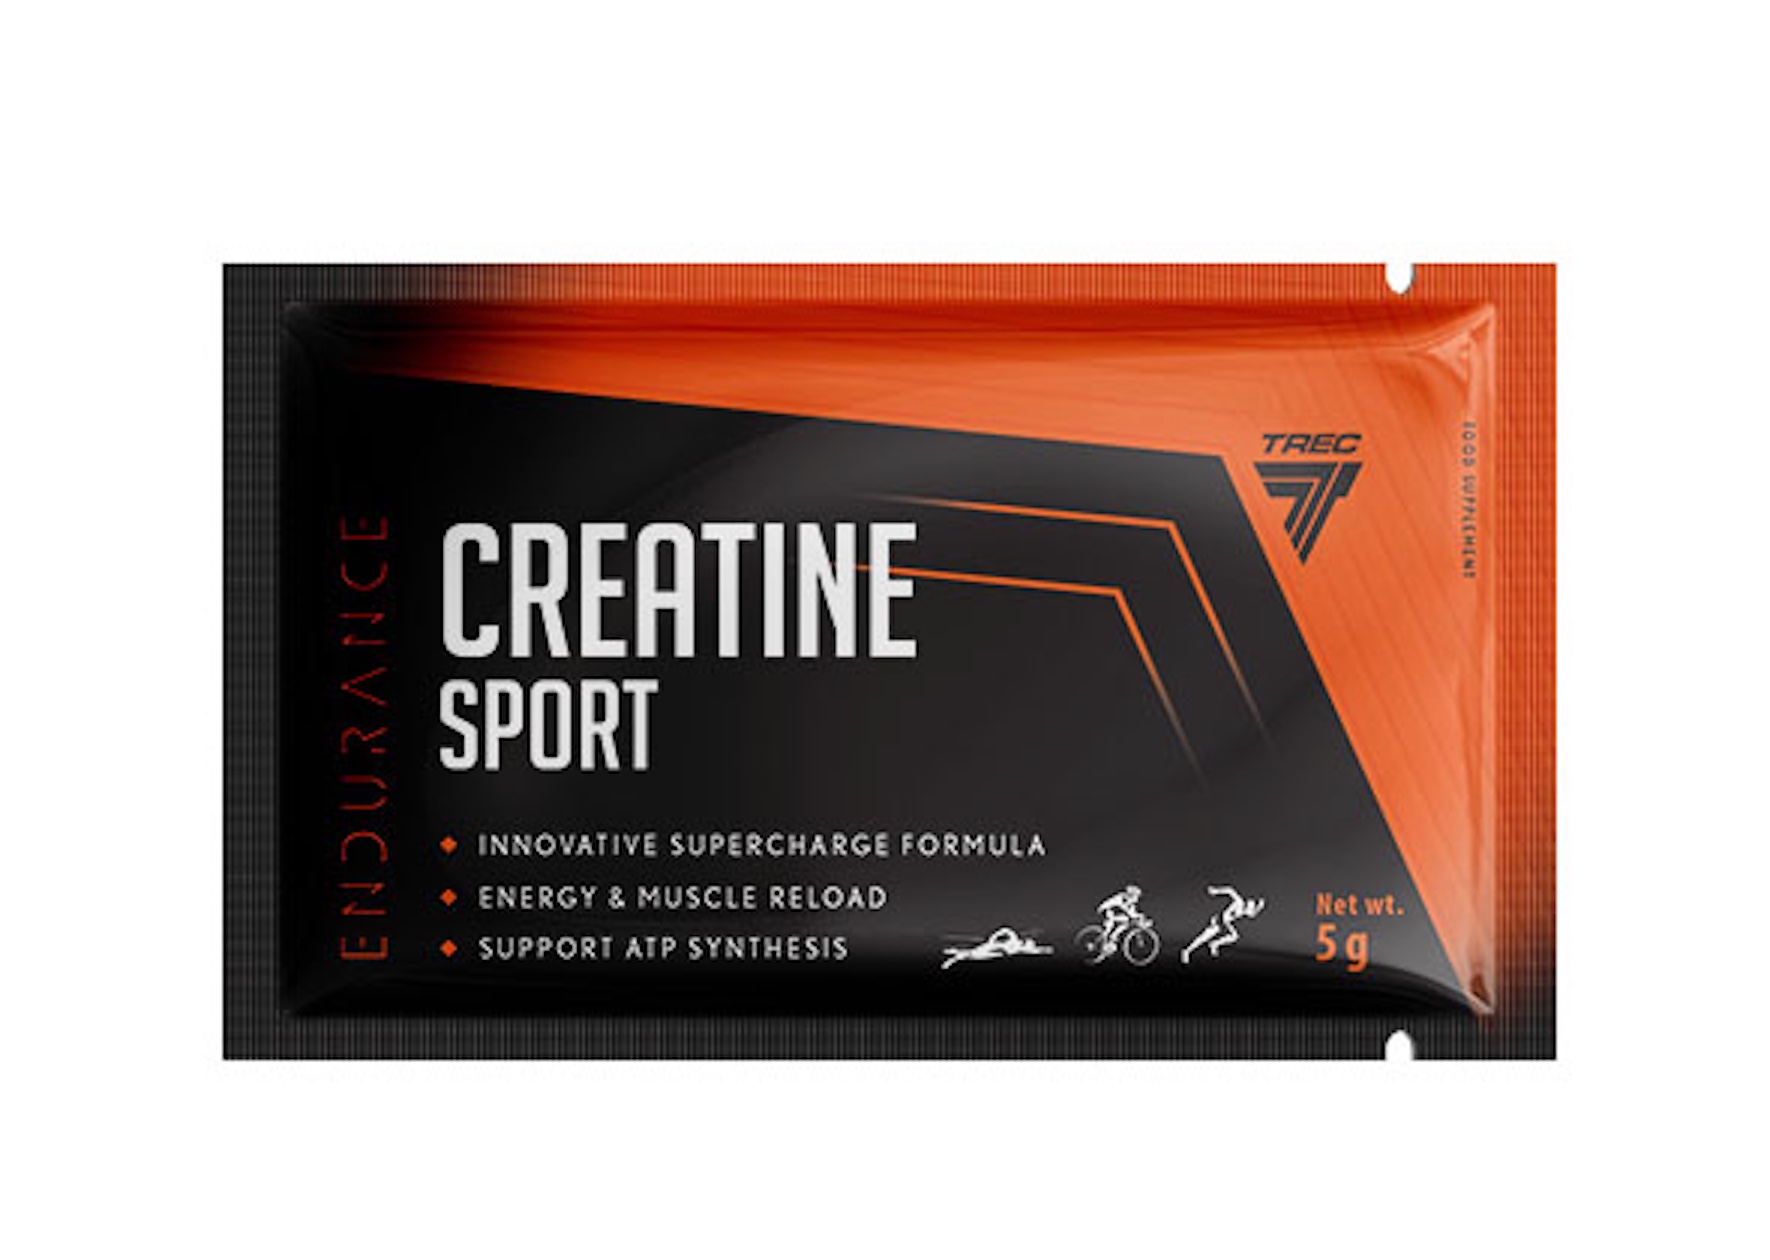 Creatine Sport (5g) - Tăng sức mạnh và Kích thích cơ bắp - Nhiều Mùi vị - Hàng Chính Hãng Trec